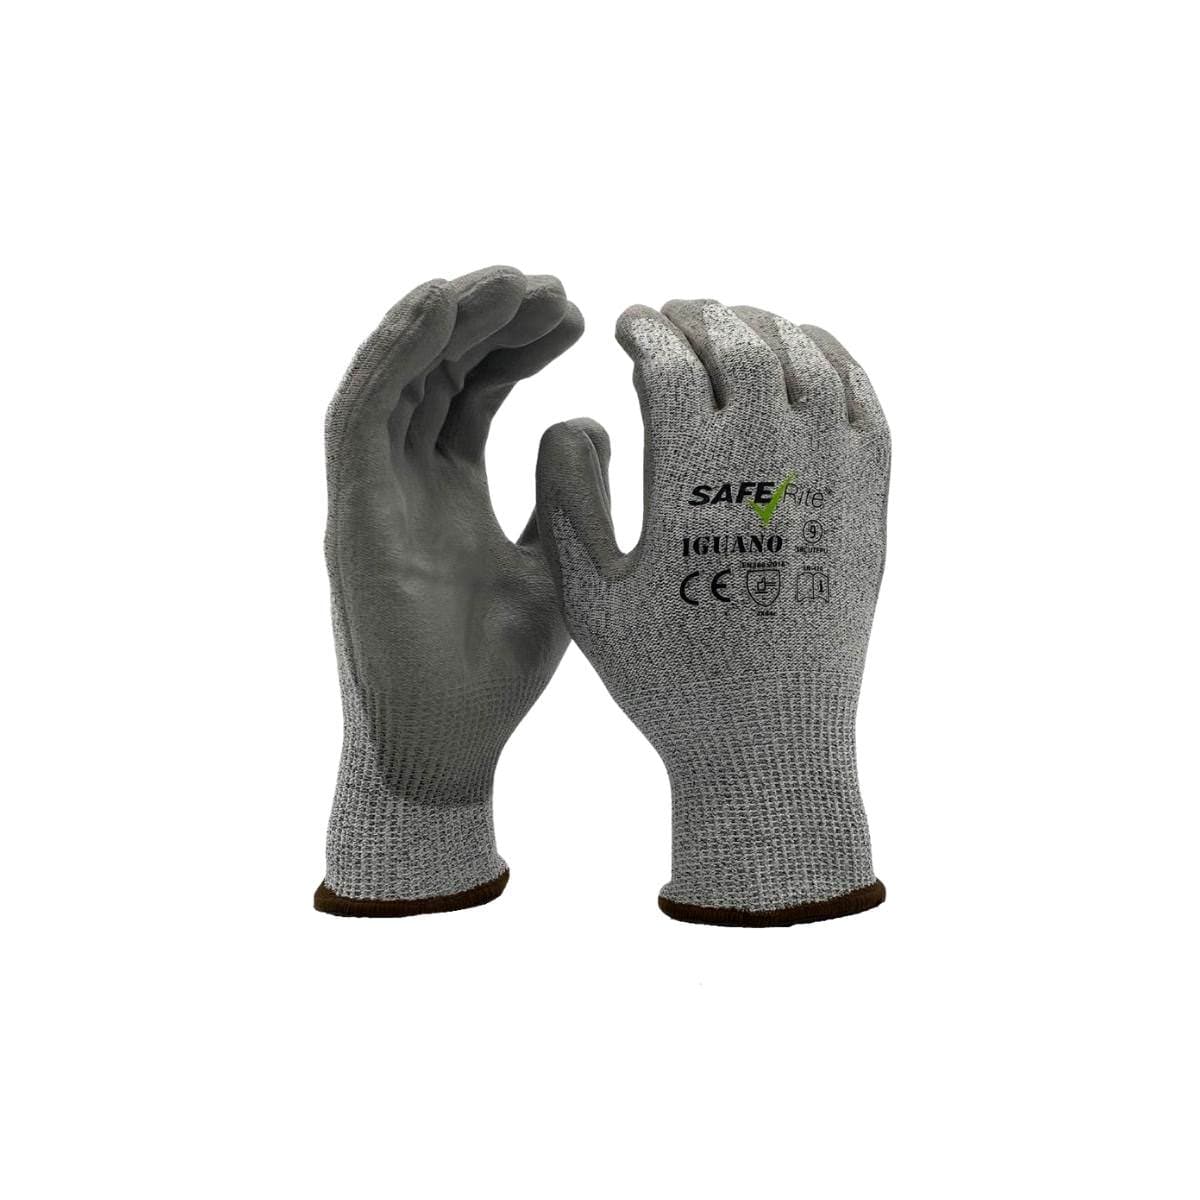 SafeRite® Iguano Cut E Polyurethane Glove SRCUTEPU (Pack of 12)